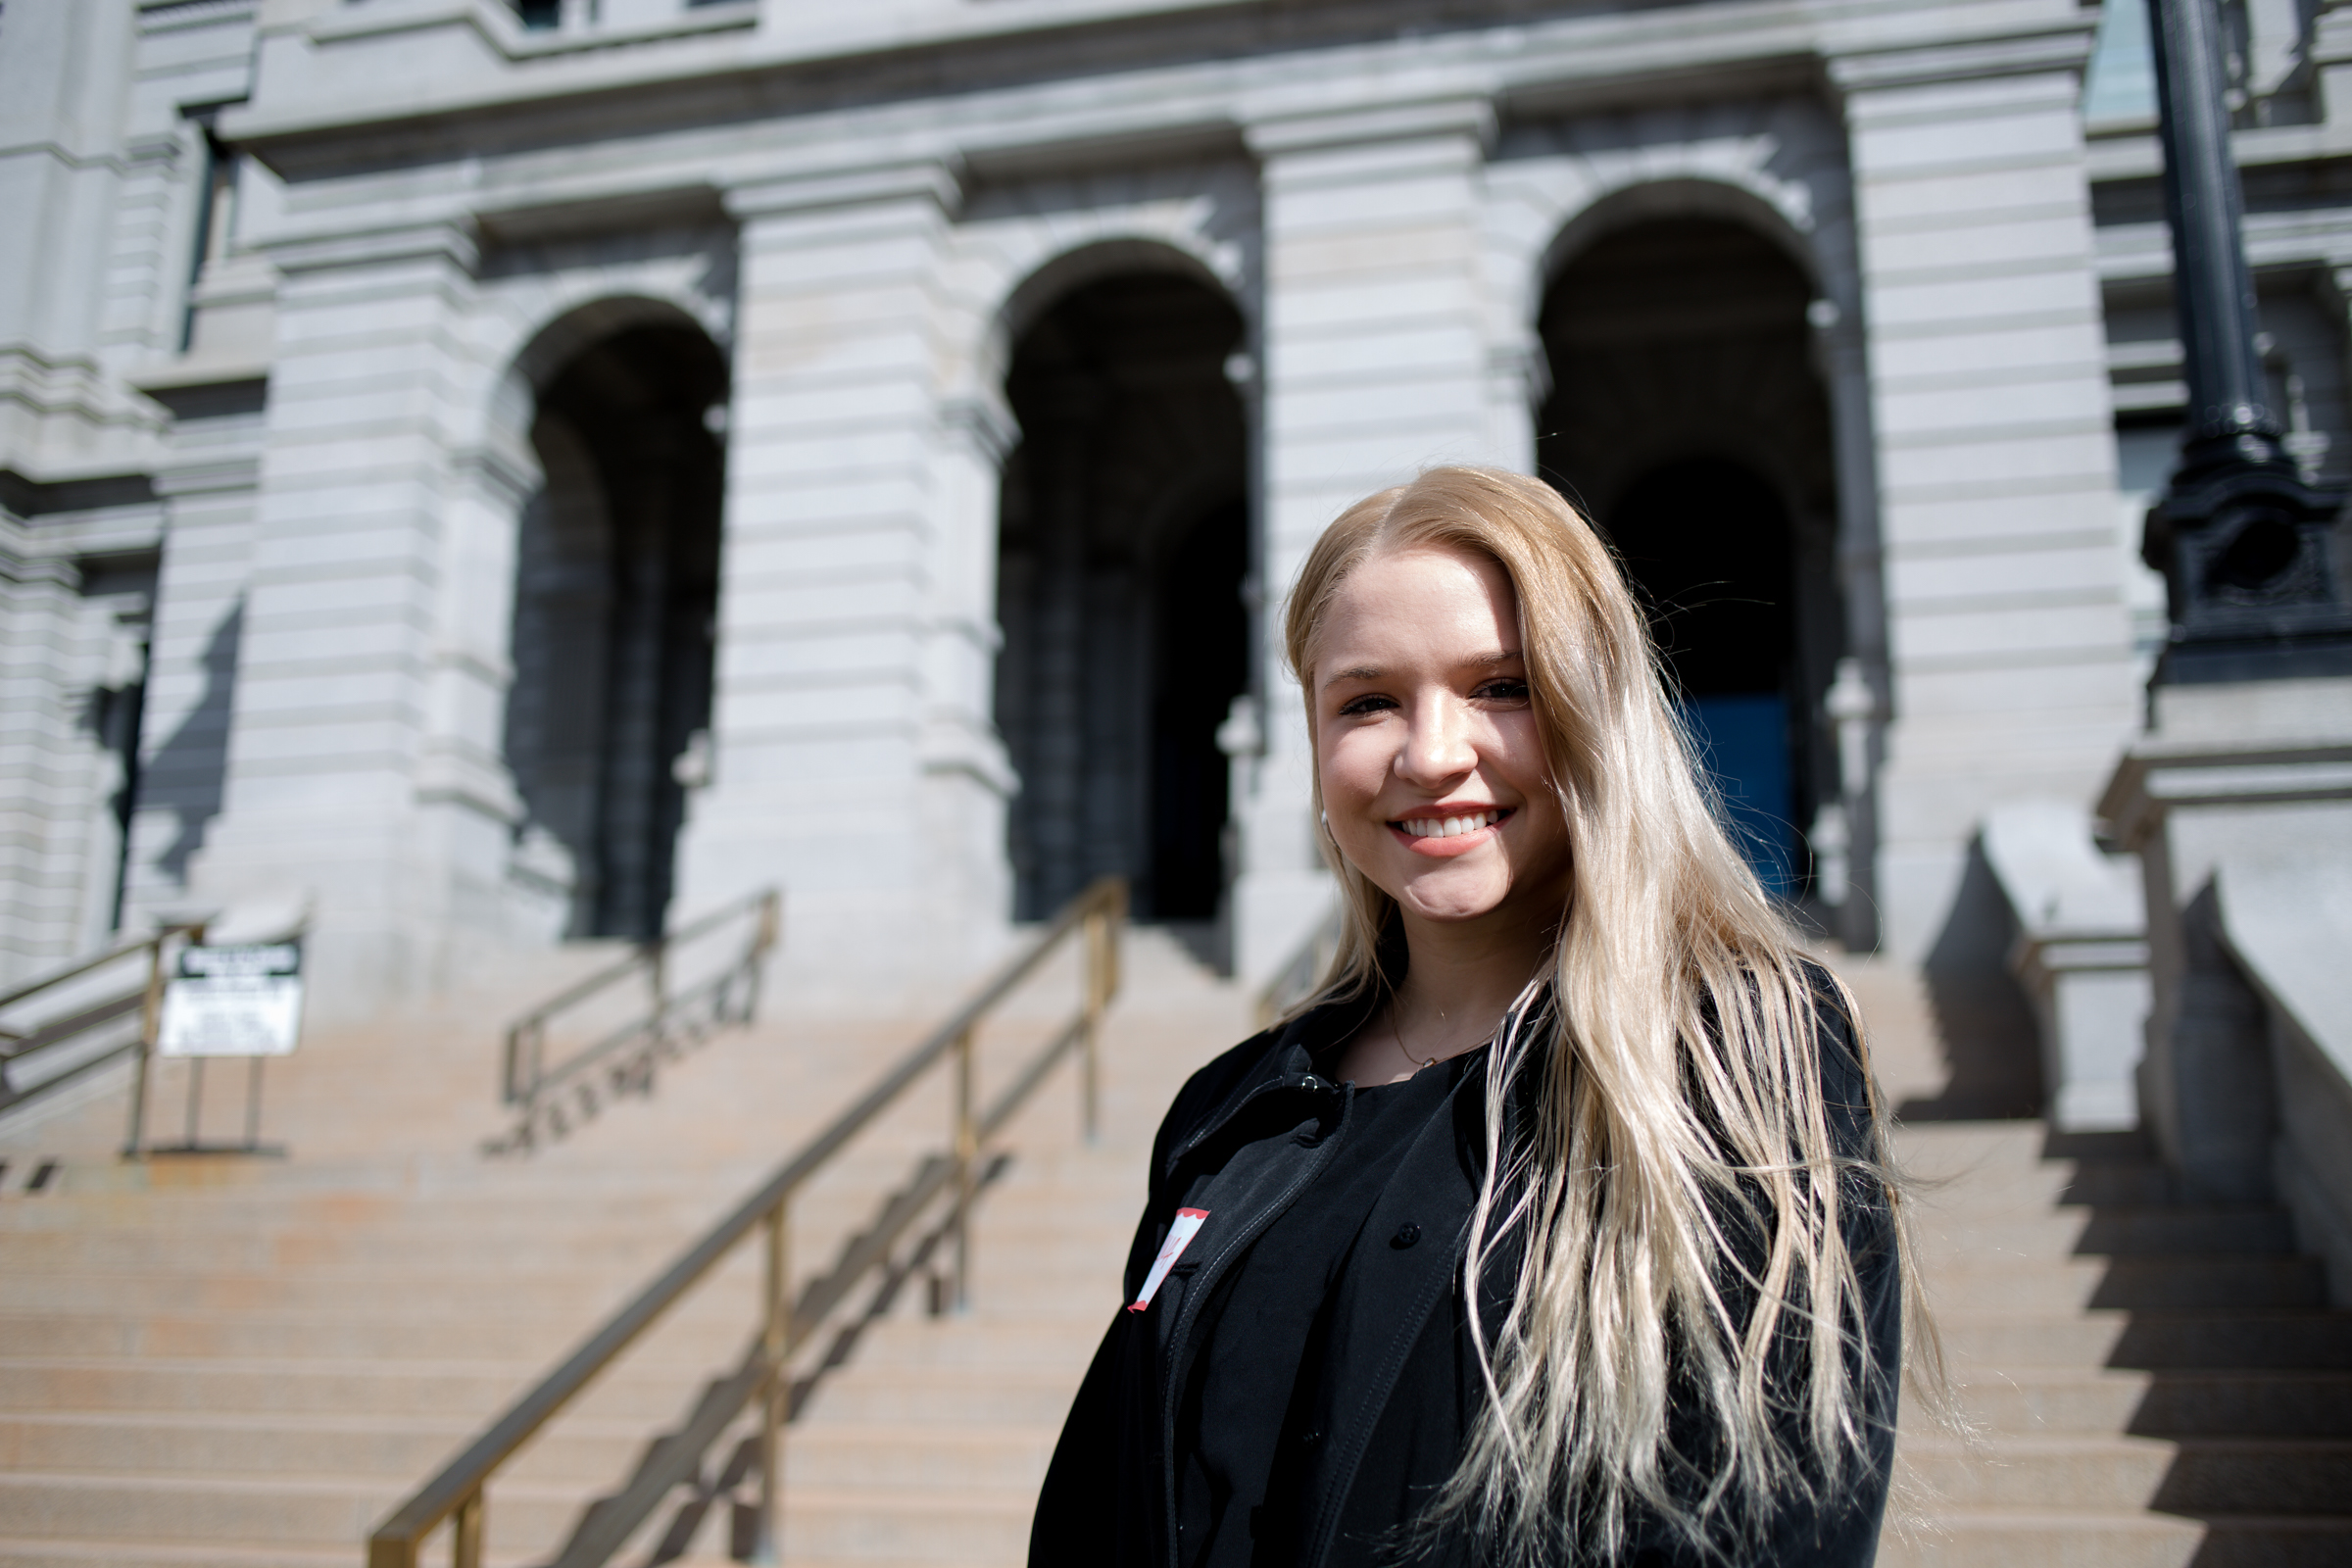 MSU Denver student Arina Rakytianska, March 6, 2020.